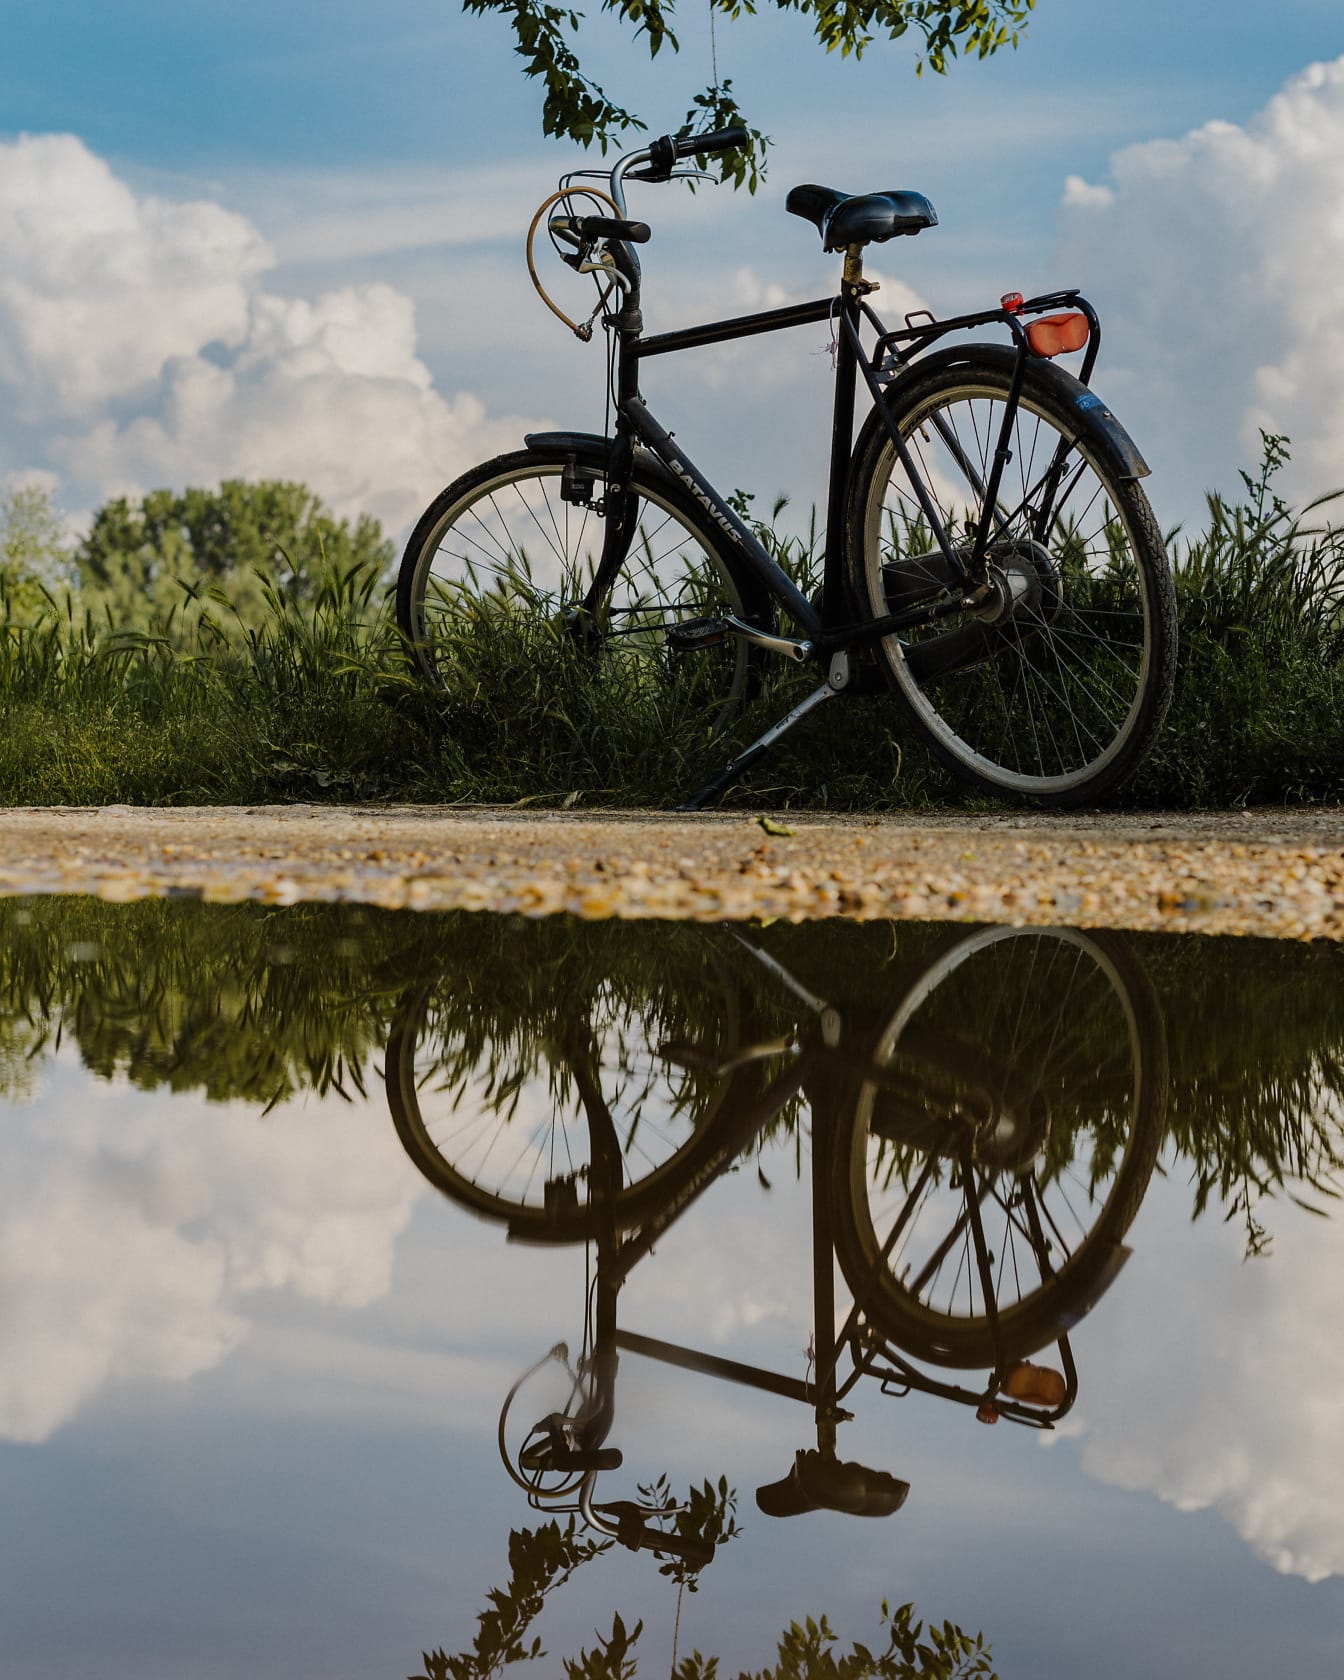 Cykel på grusväg med reflektion på dammen